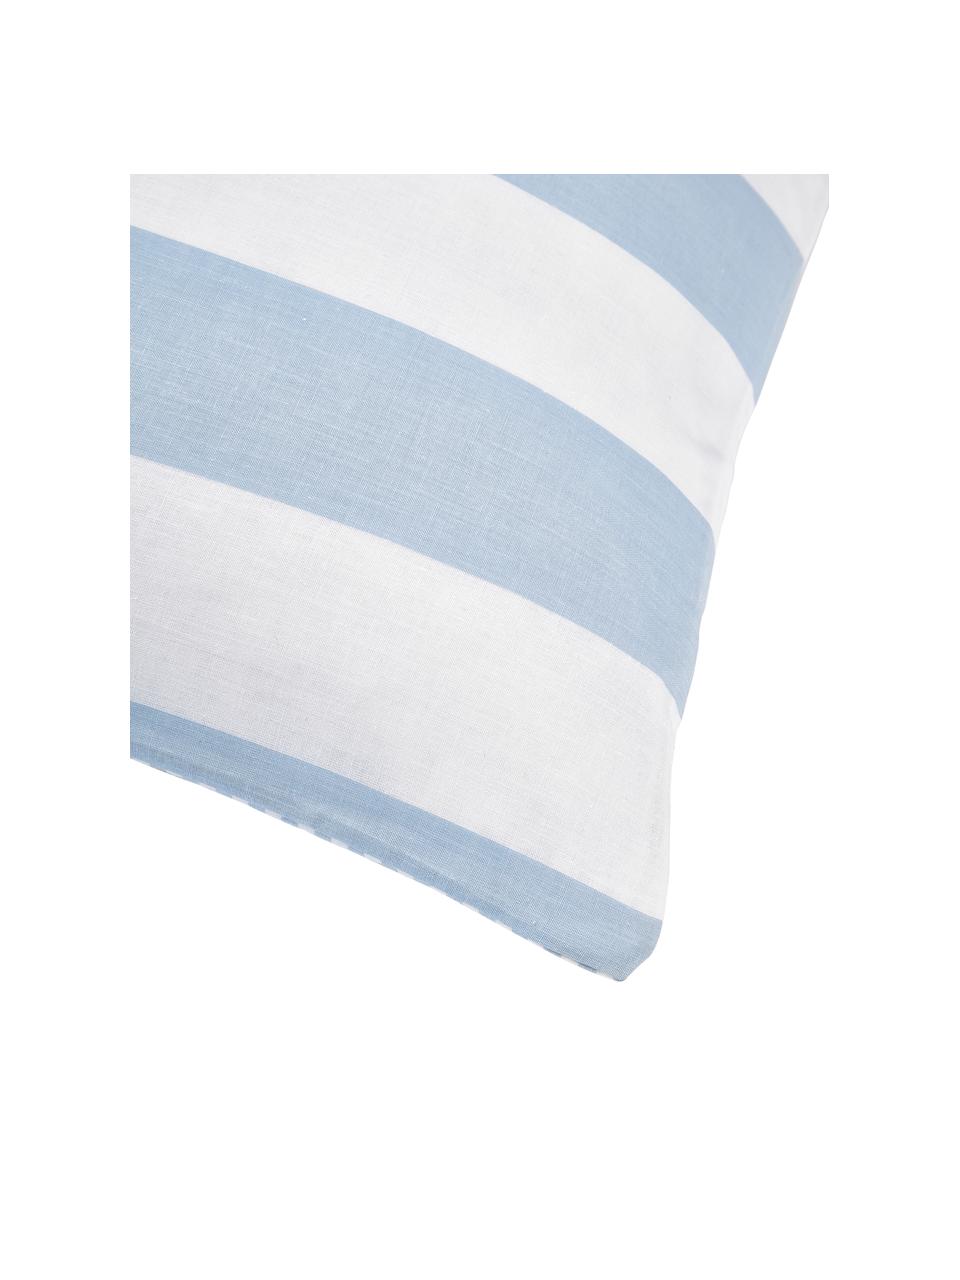 Dwustronna poszewka na poduszkę z bawełny Lorena, Jasny niebieski, biały, S 40 x D 80 cm